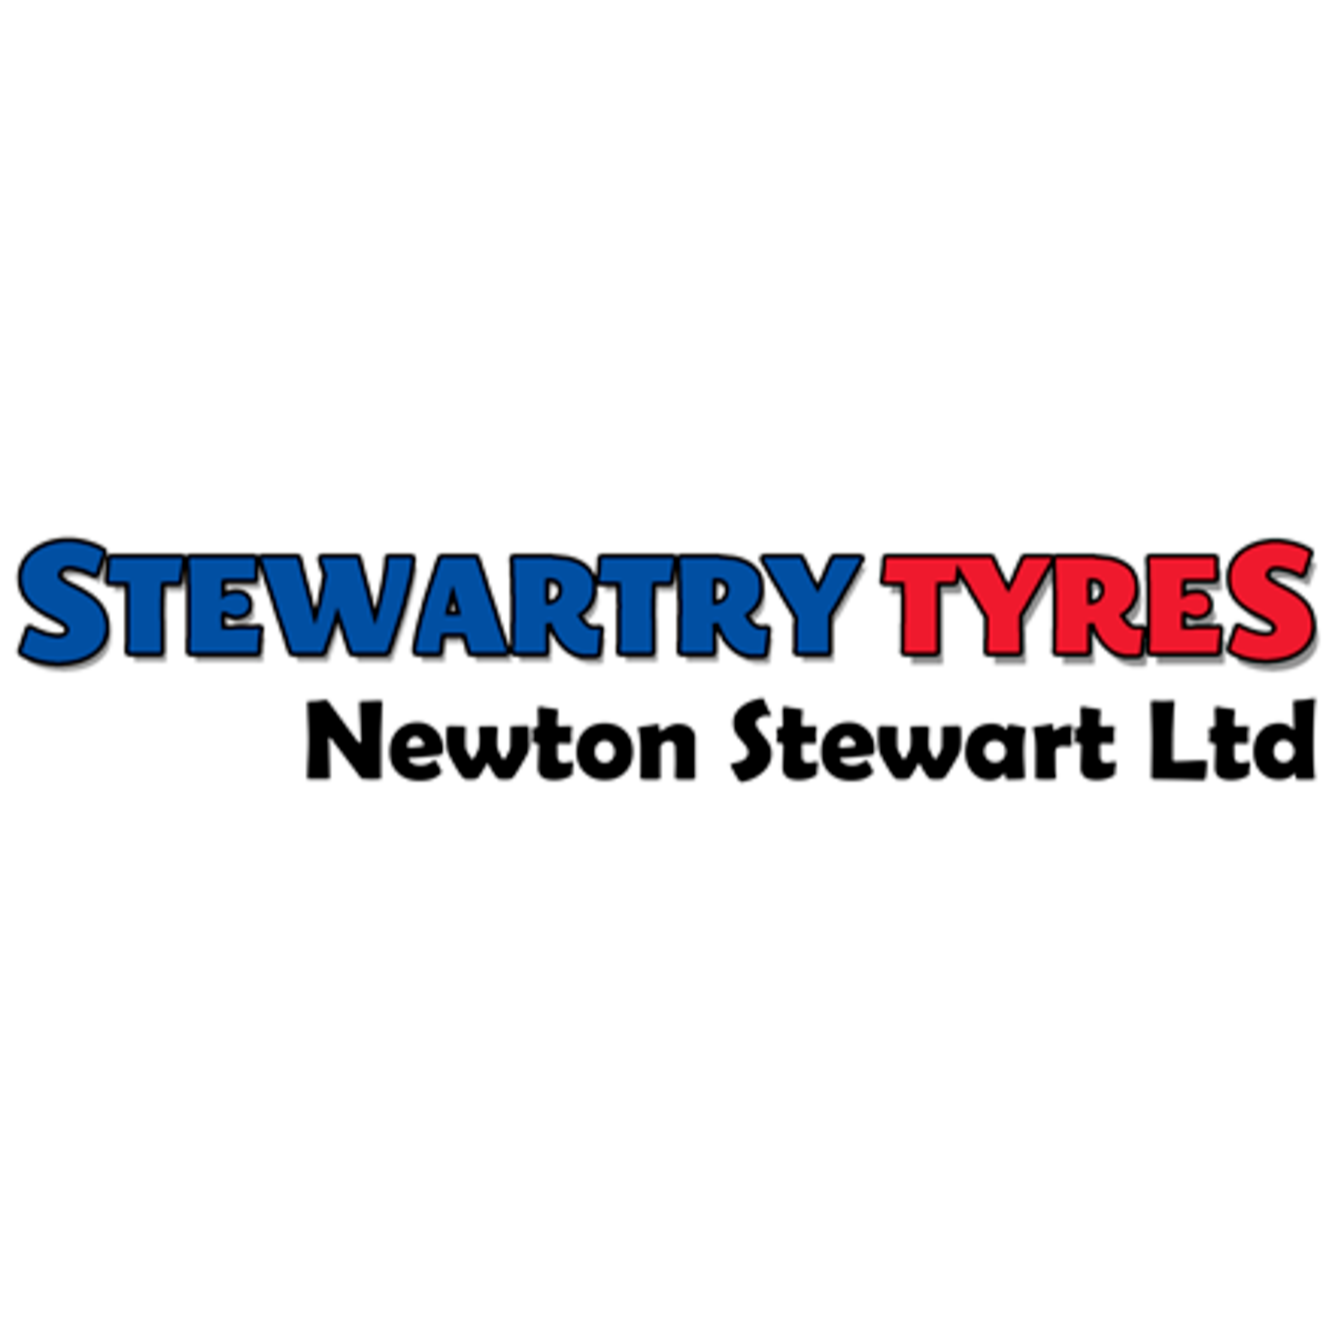 Stewartry Tyres Newton Stewart Ltd - Newton Stewart, Dumfriesshire DG8 6JY - 01671 401112 | ShowMeLocal.com